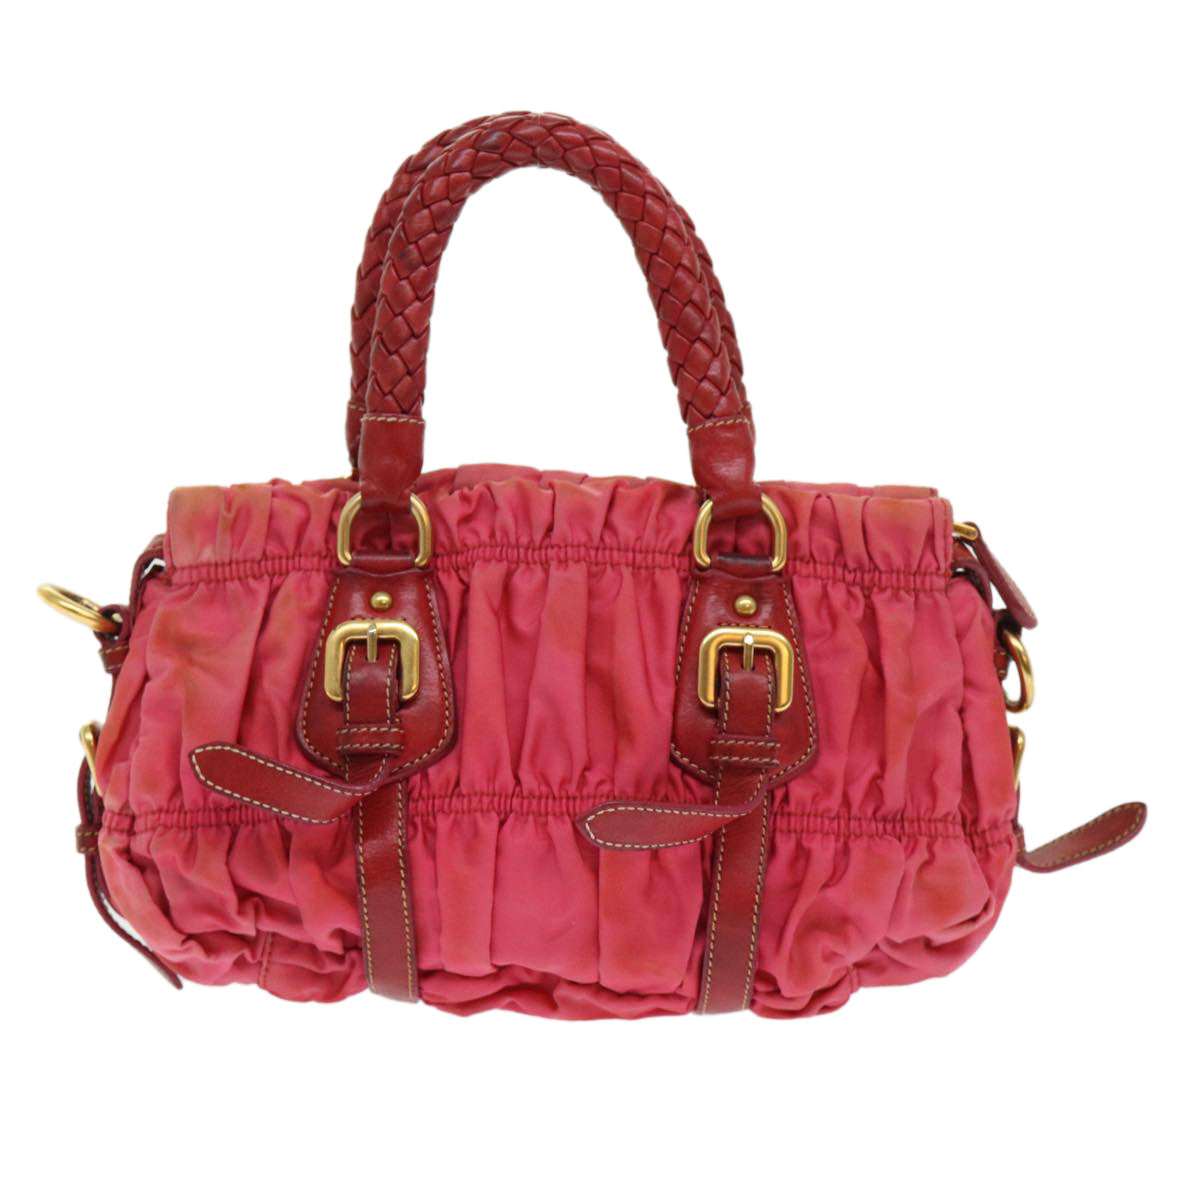 PRADA Hand Bag Nylon 2way Red Auth 46678 - 0